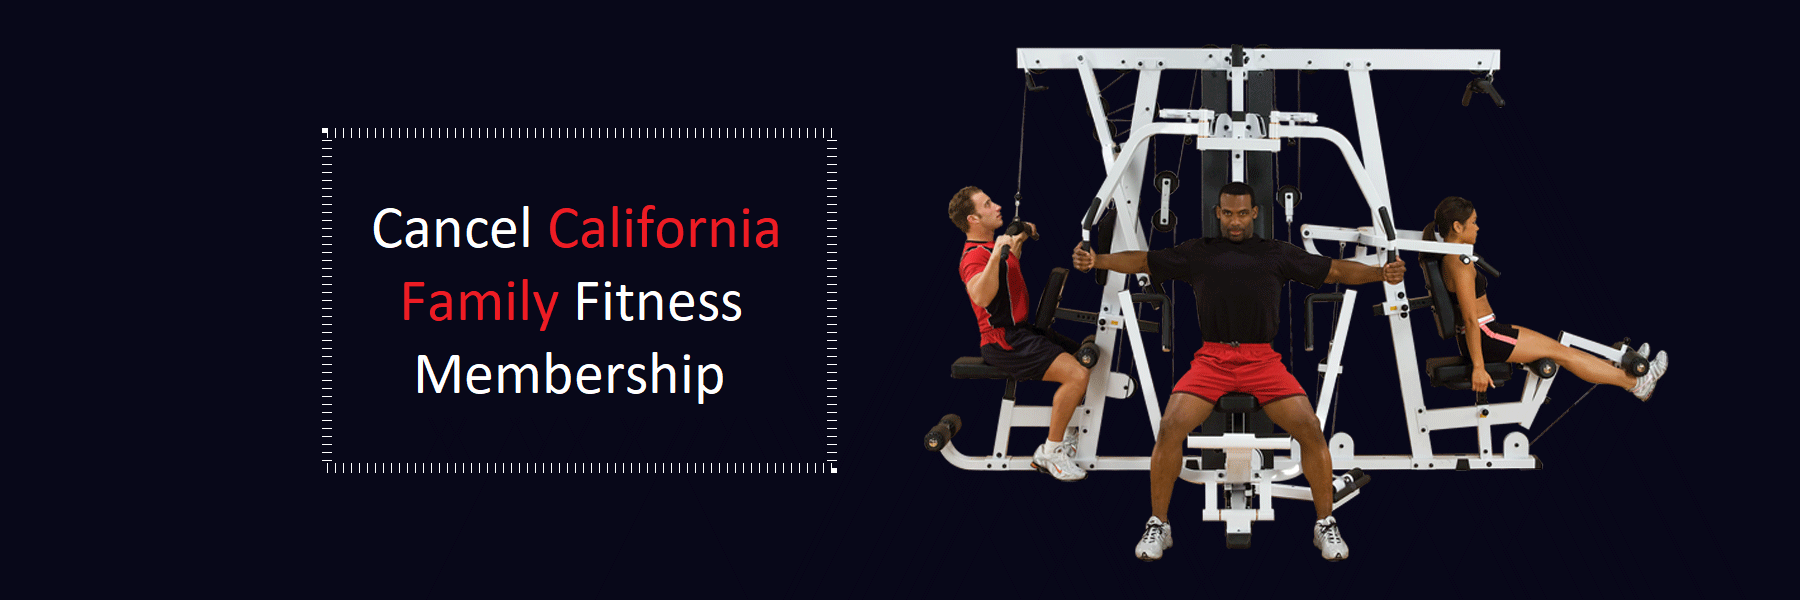 Cancel-California-Family-Fitness-Membership